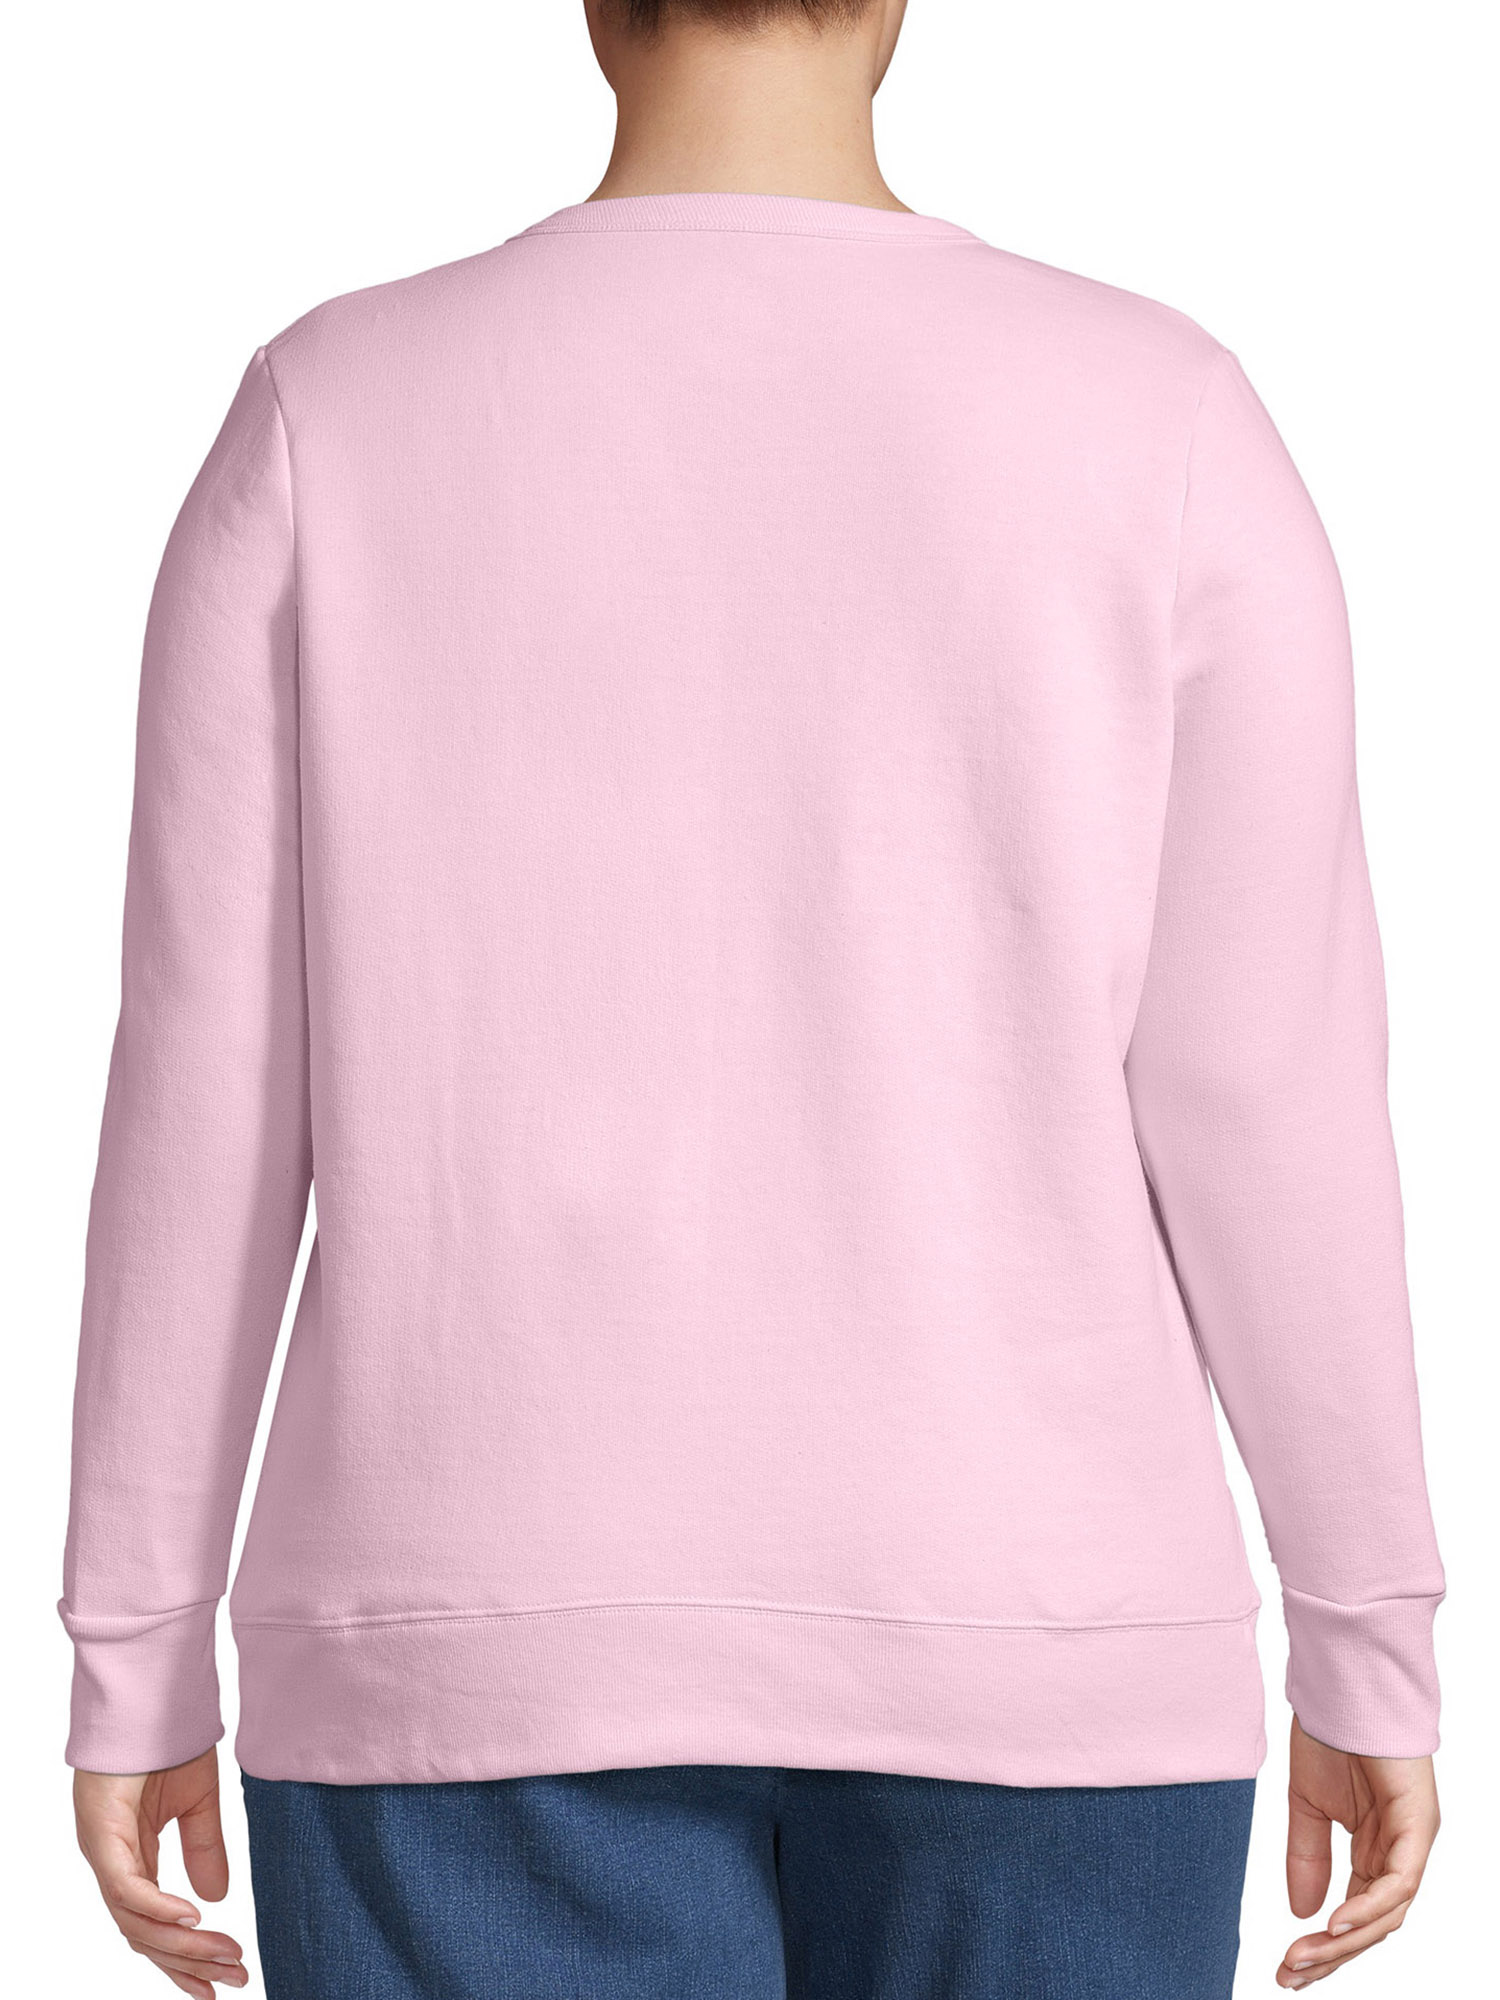 JMS by Hanes Women's Plus Size Fleece Pullover Sweatshirt - Walmart.com